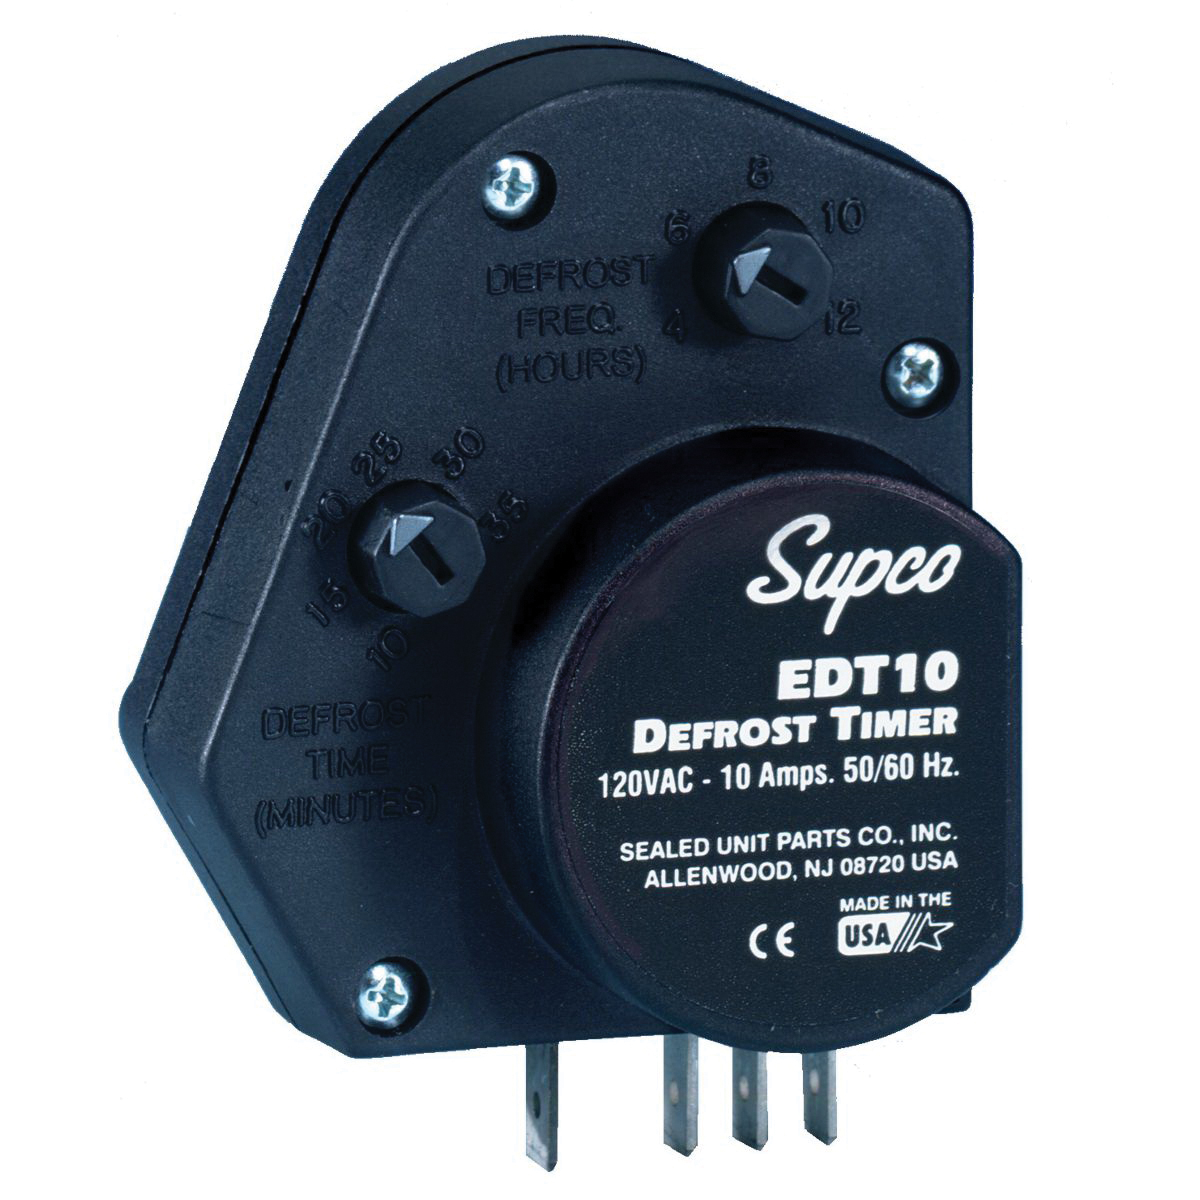 Supco® EDT EDT10 Defrost Timer, 10 - 35 min Adjustable Defrost, 120 VAC, 1/3 hp